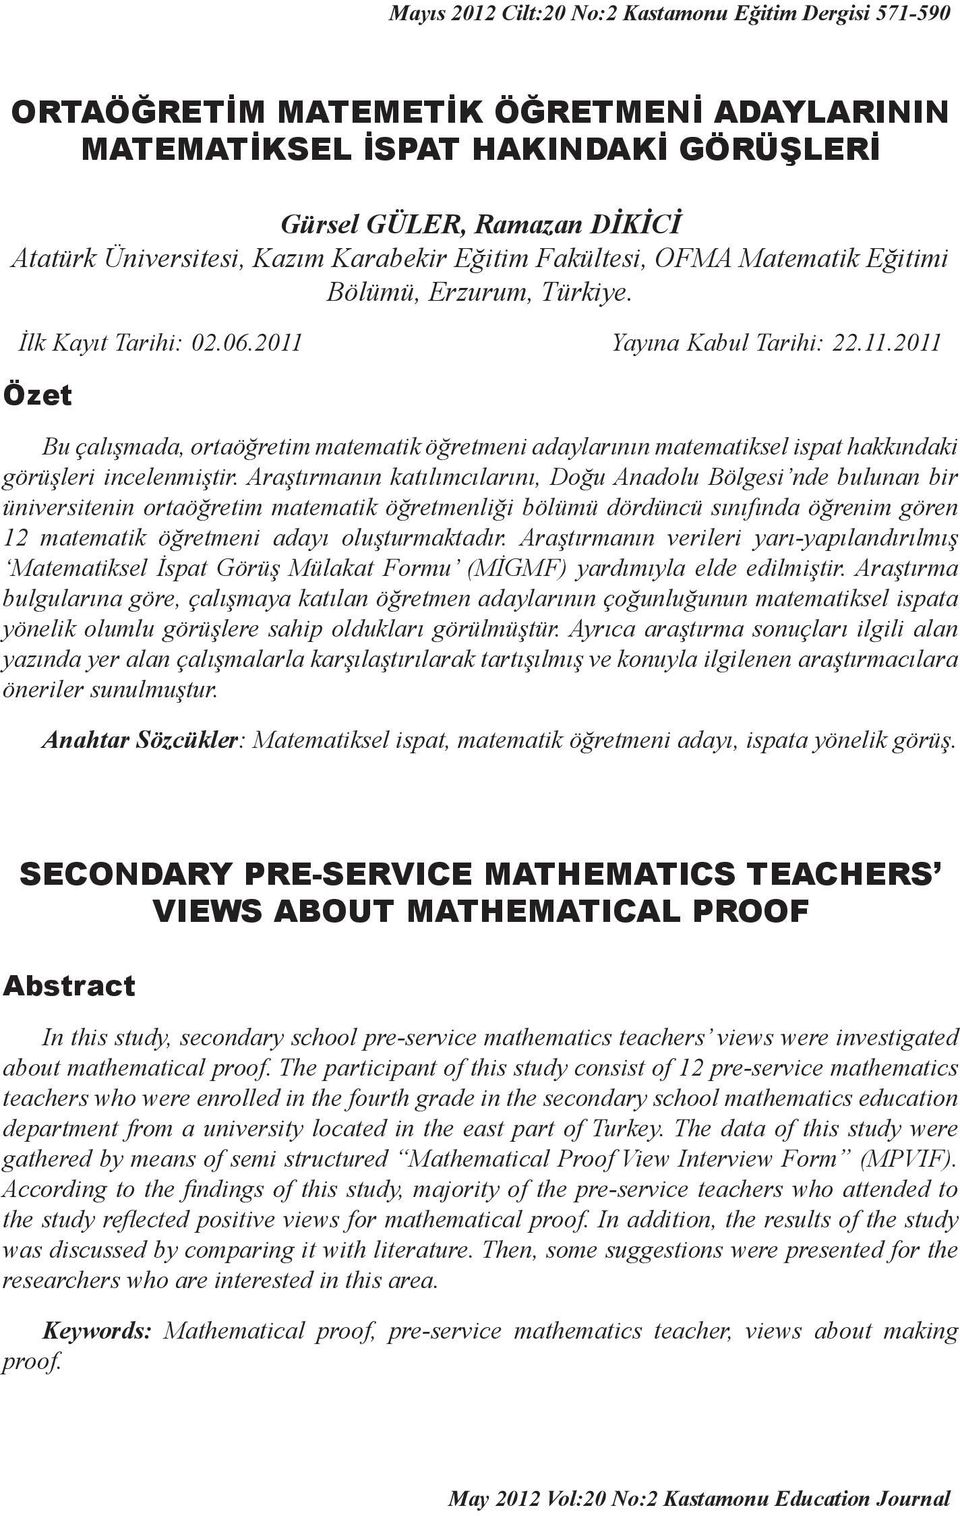 Araştırmanın katılımcılarını, Doğu Anadolu Bölgesi nde bulunan bir üniversitenin ortaöğretim matematik öğretmenliği bölümü dördüncü sınıfında öğrenim gören 12 matematik öğretmeni adayı